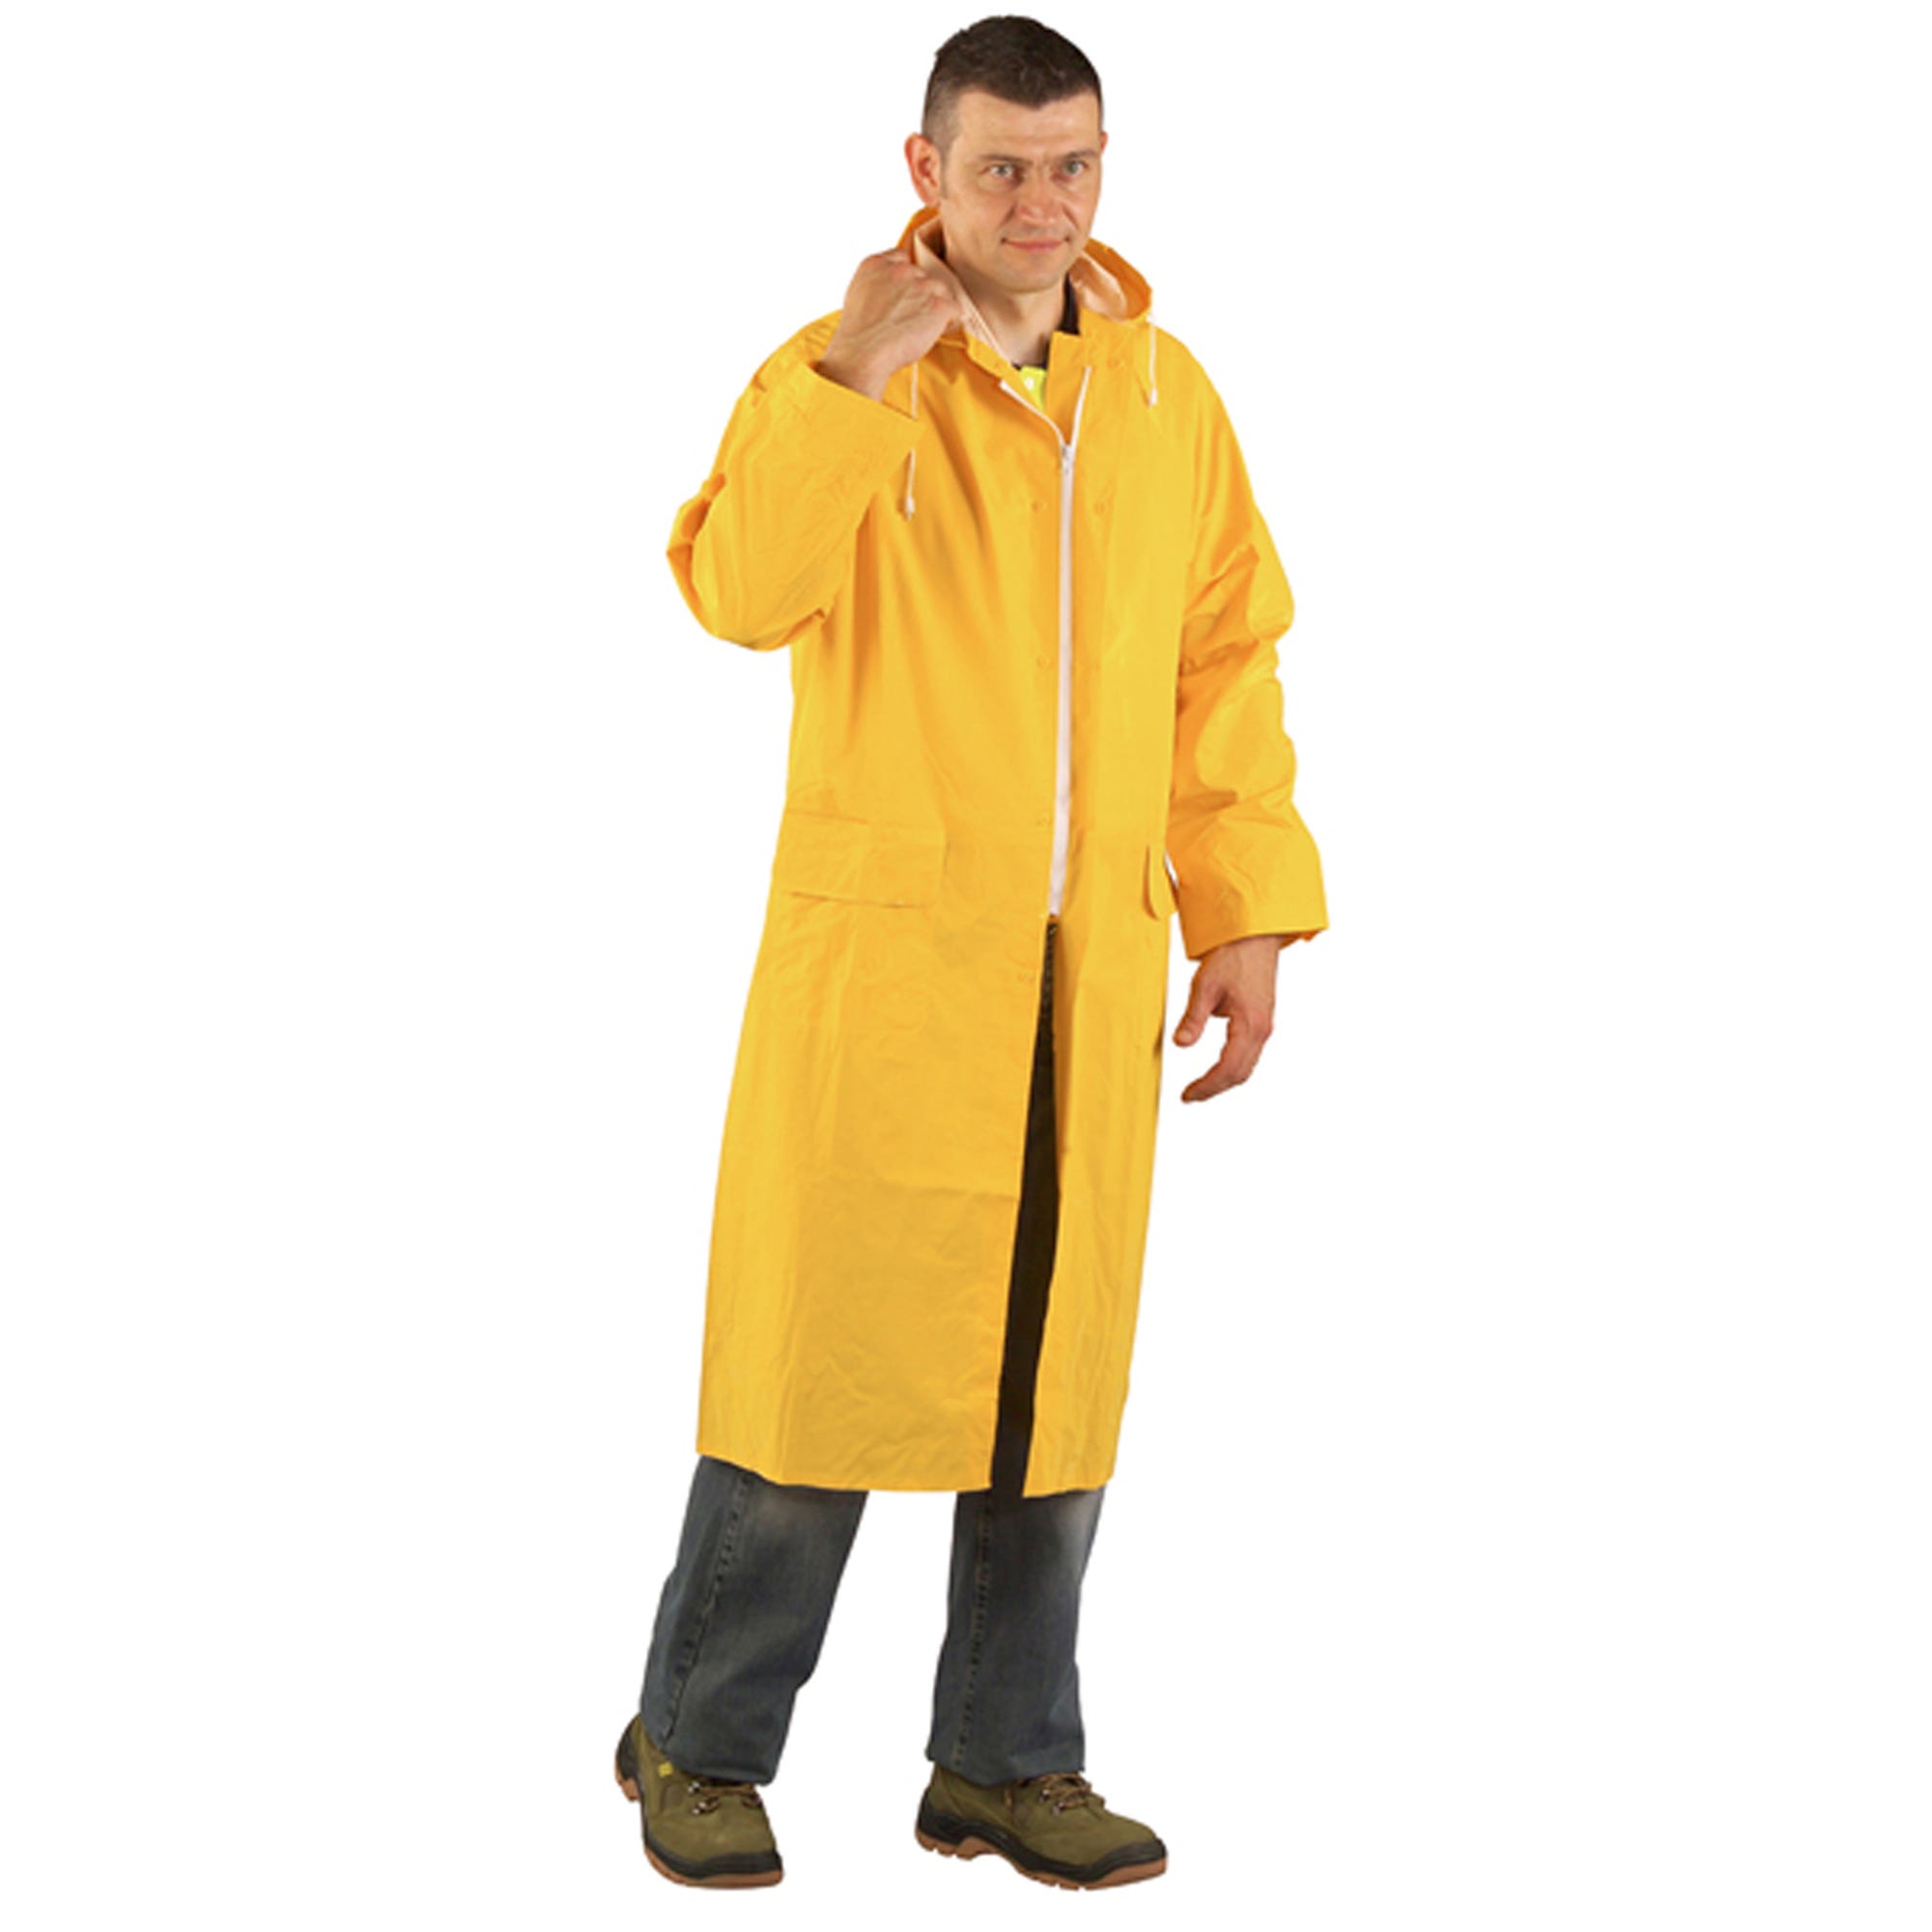 Manteau de pluie CO/PES, jaune, 415g/m² - COVERGUARD - Taille M 1